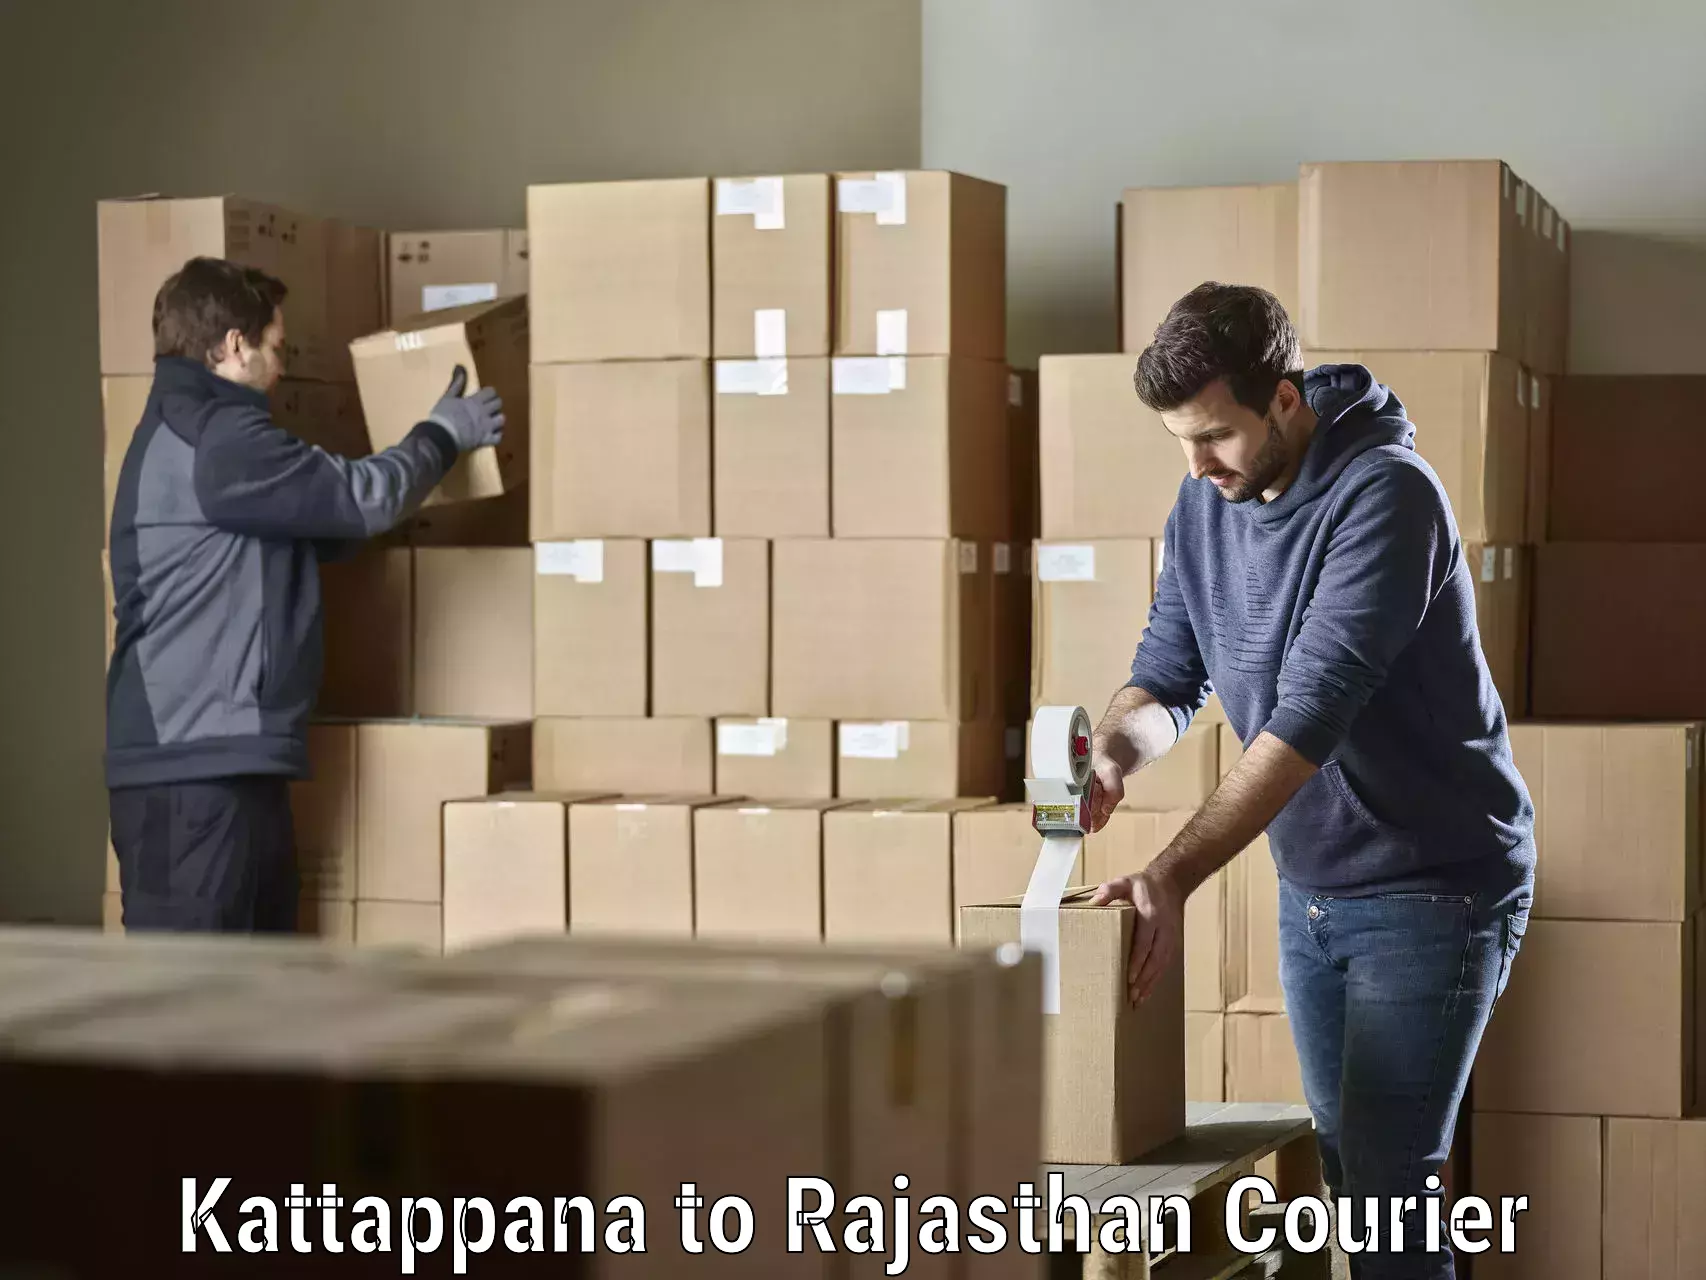 Holiday shipping services Kattappana to Rajasthan